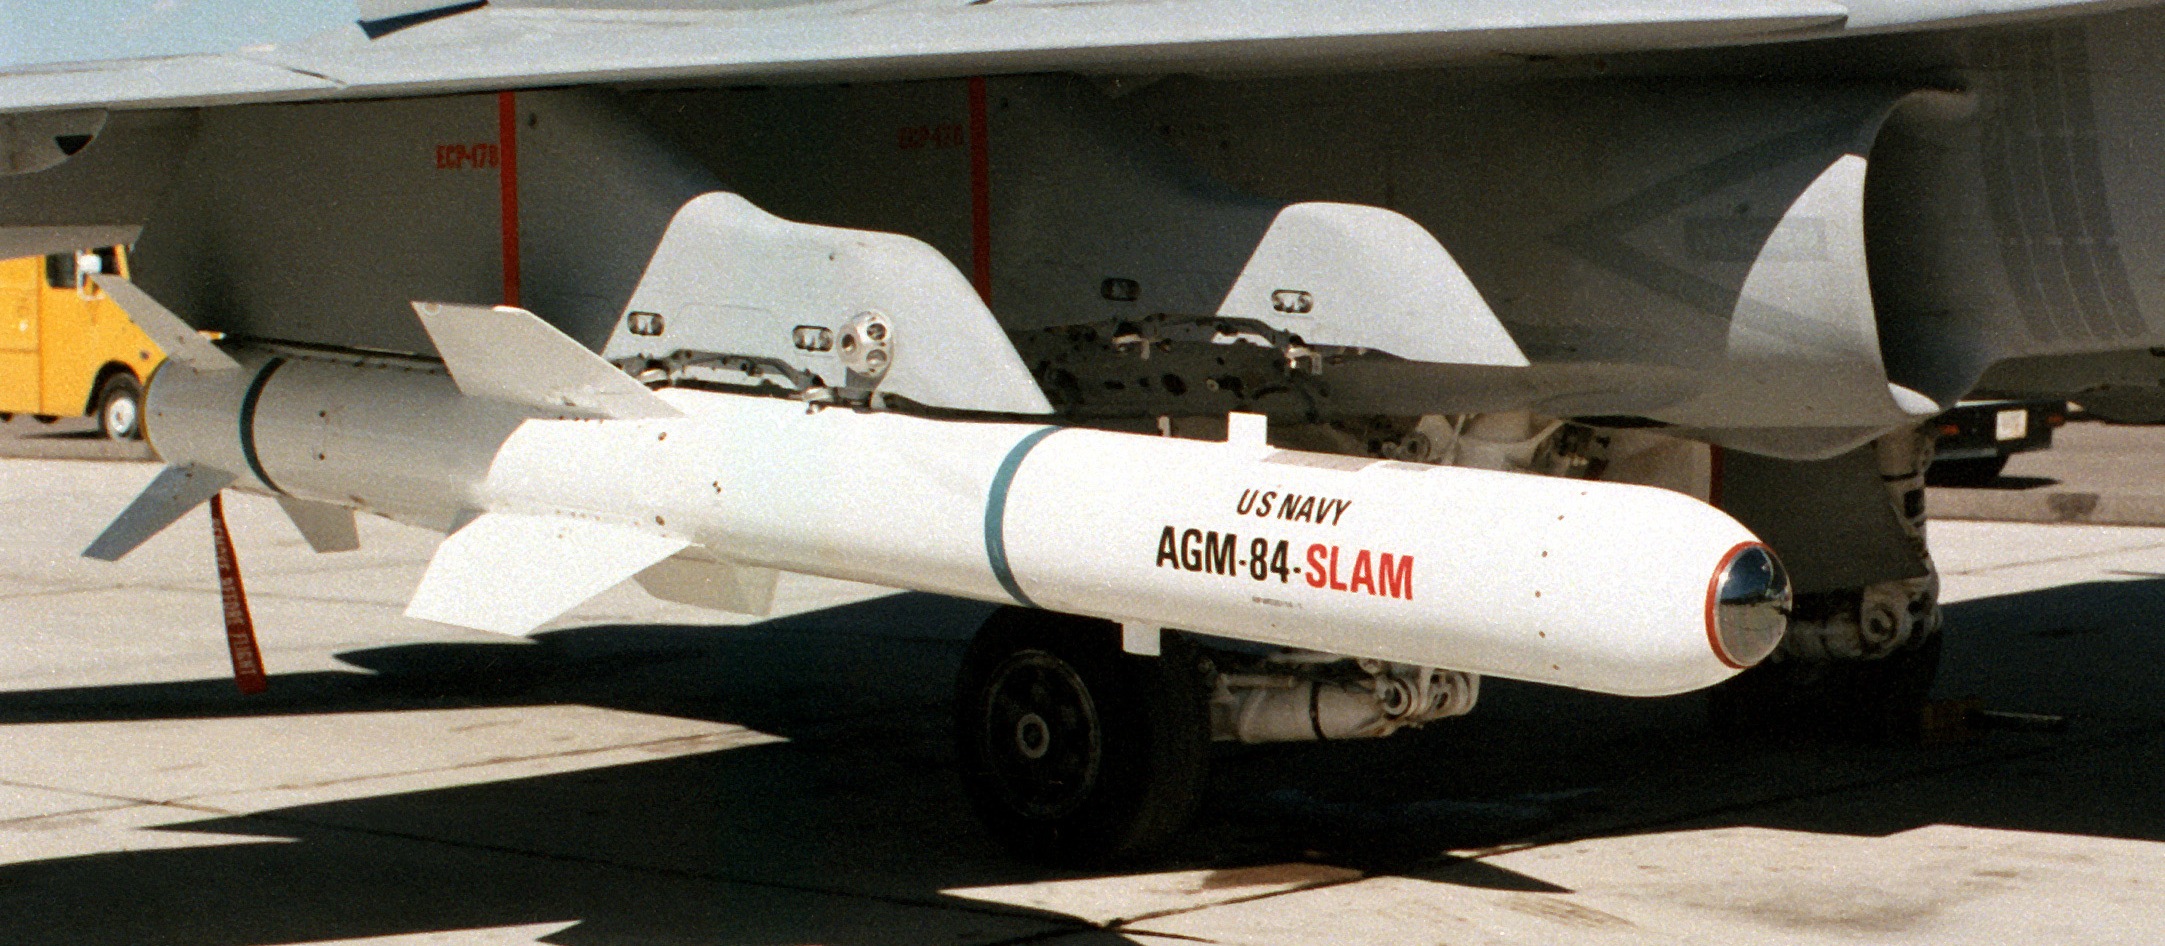 موشک ضد کشتی AGM-84 هارپون و نسخه تهاجمی اسلم 1